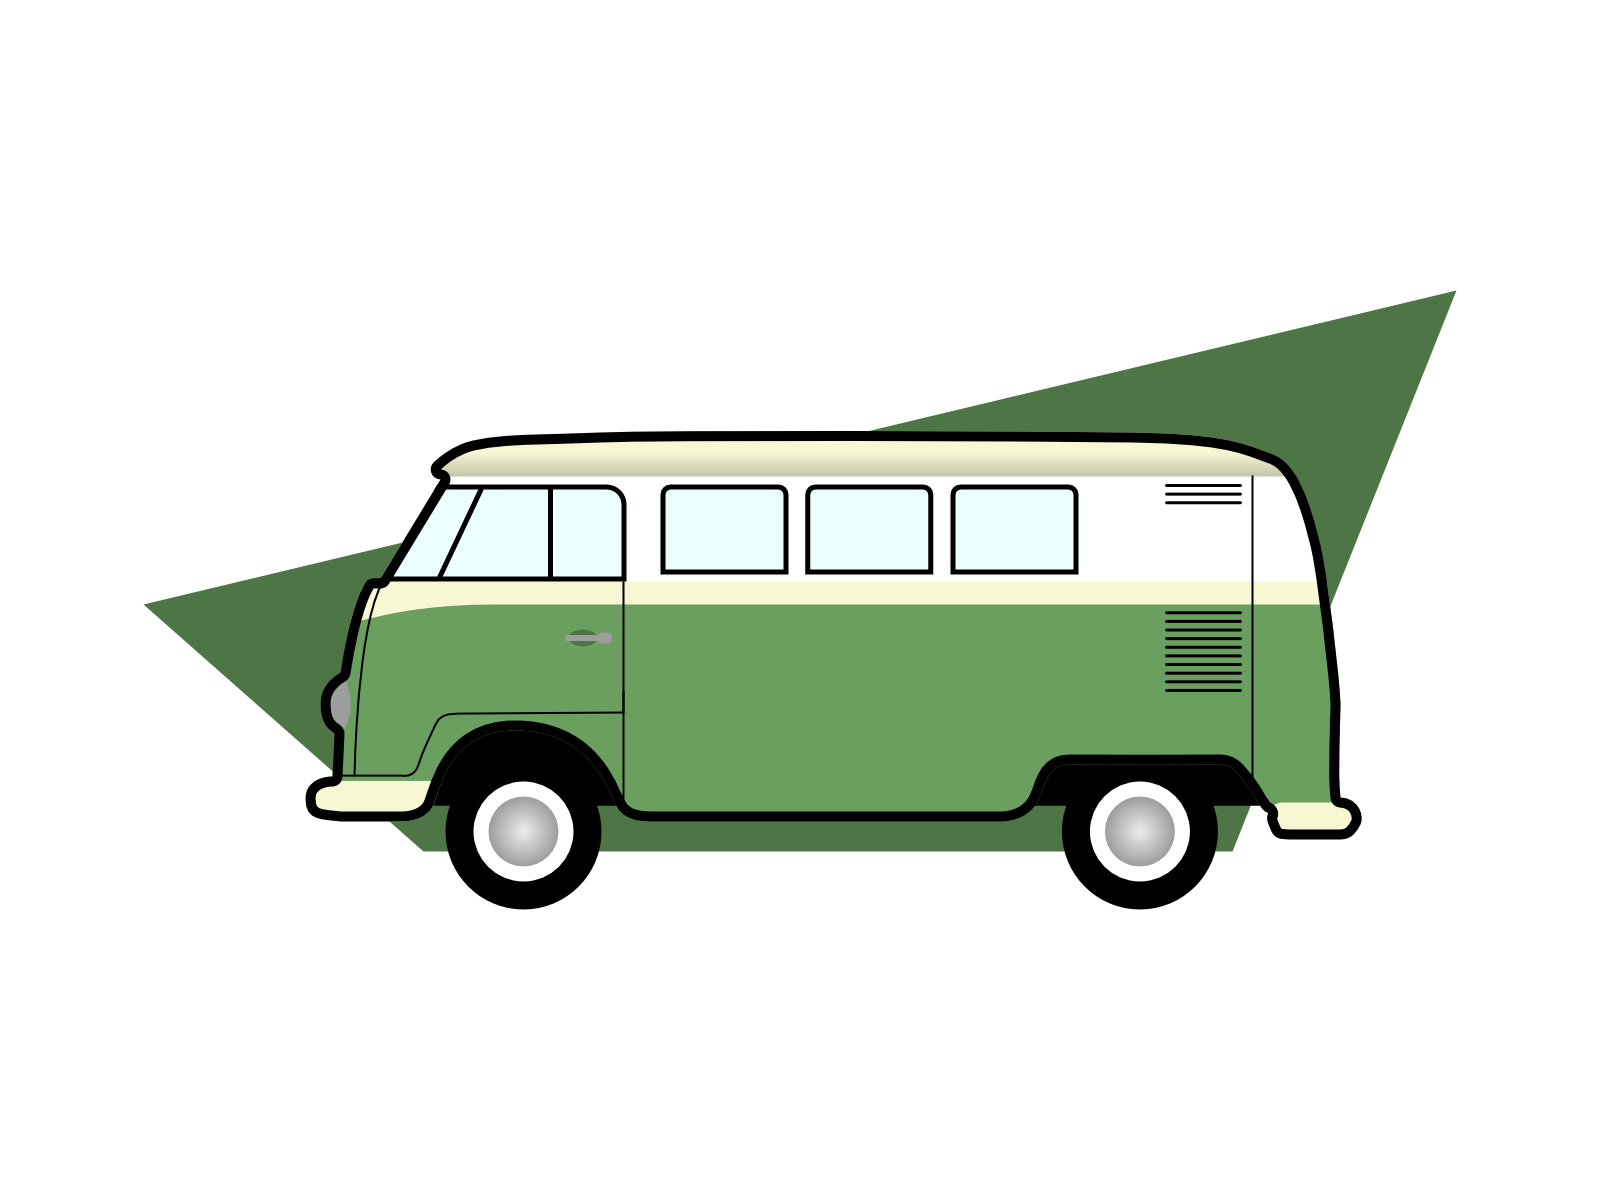 VW Combi affinity designer car combi design hippie van illustration minibus minimalist travel van vector vector illustration volkswagen